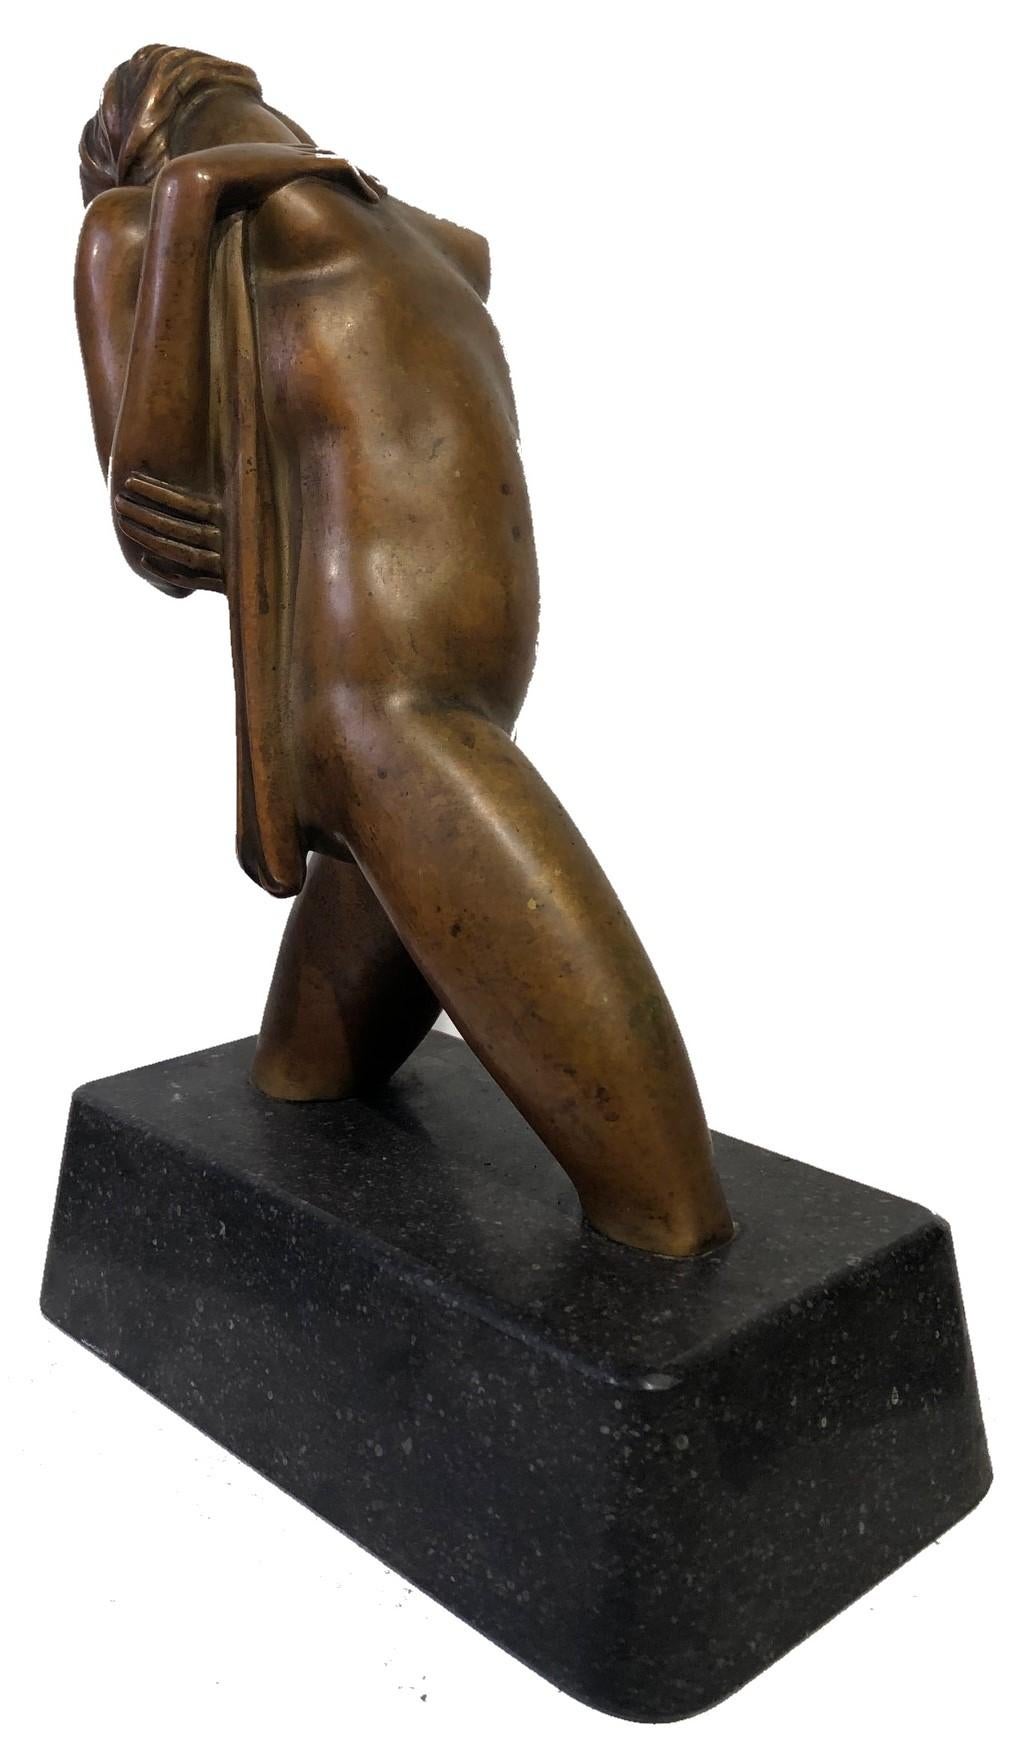 American Art Deco Female Nude Bronze Sculpture by Joseph C. Motto, ca. 1920s  For Sale 3